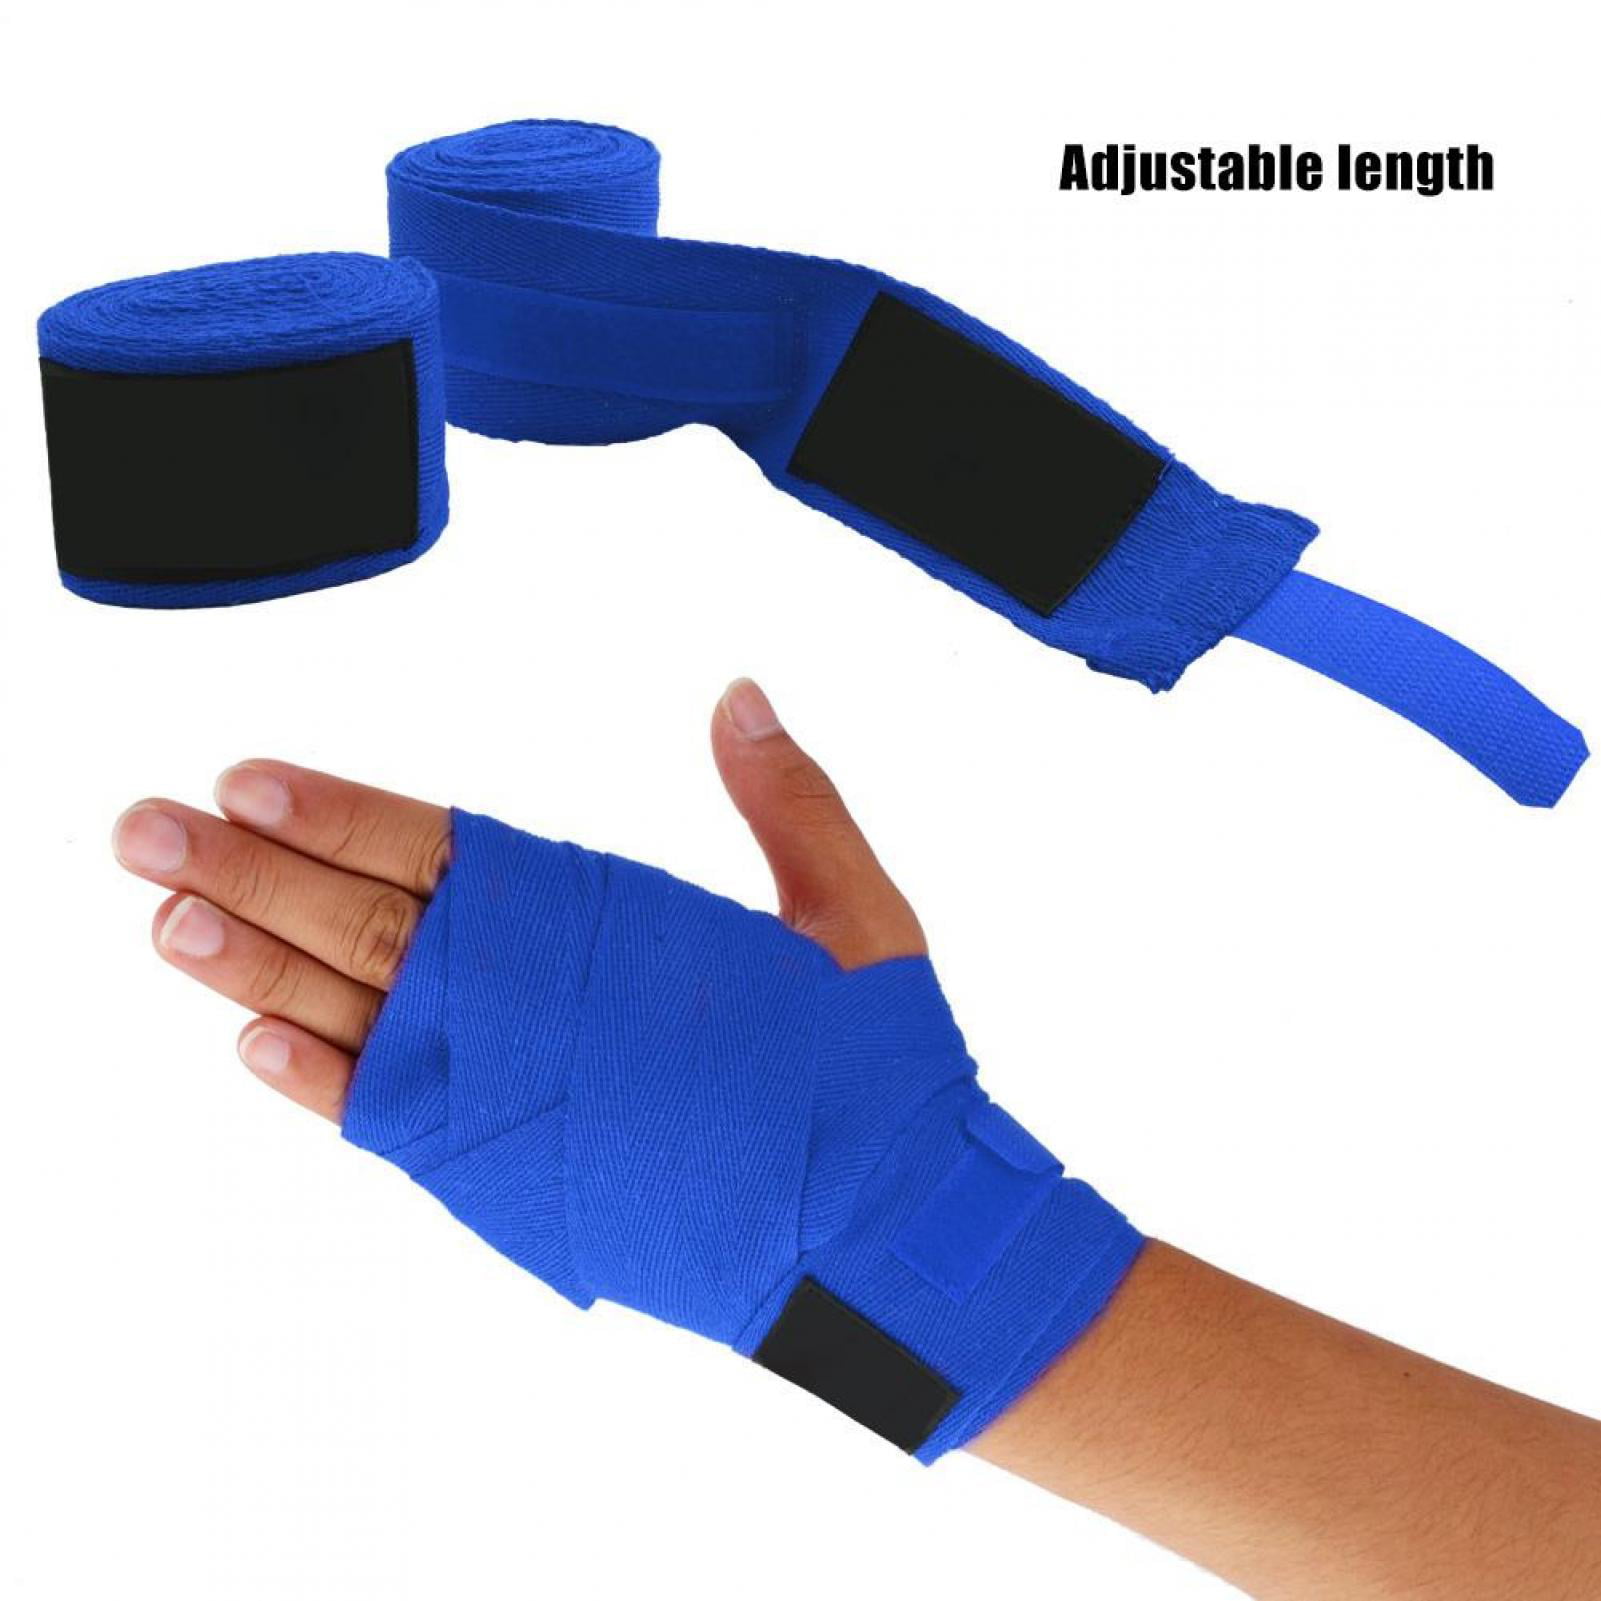 Details about   Boxing Muay Thai Taekwondo Bandage Hand Gloves Wraps Wrist Straps Kickboxing New 